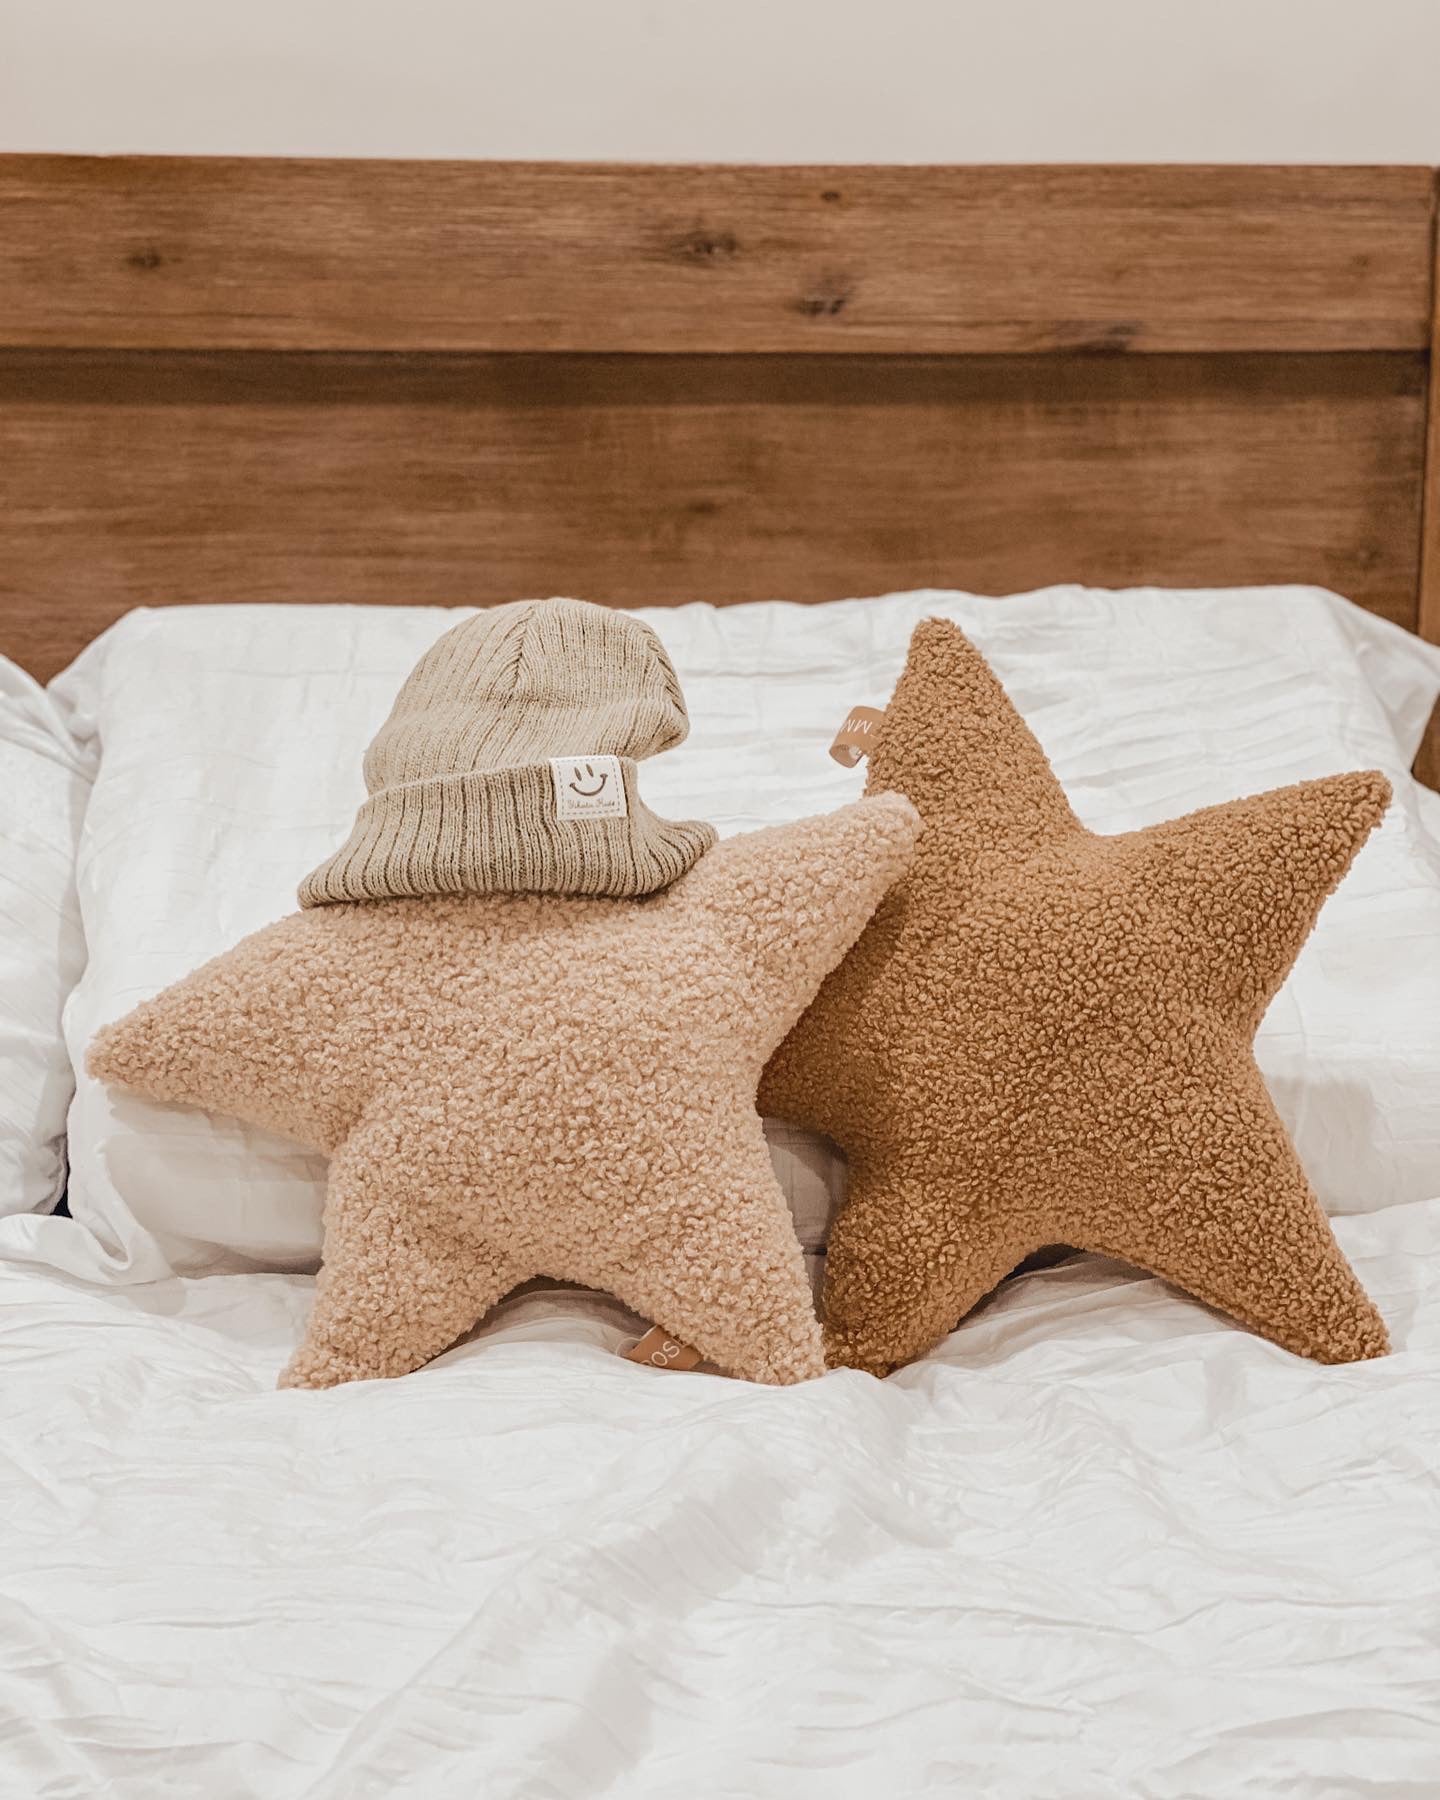 Star cushions